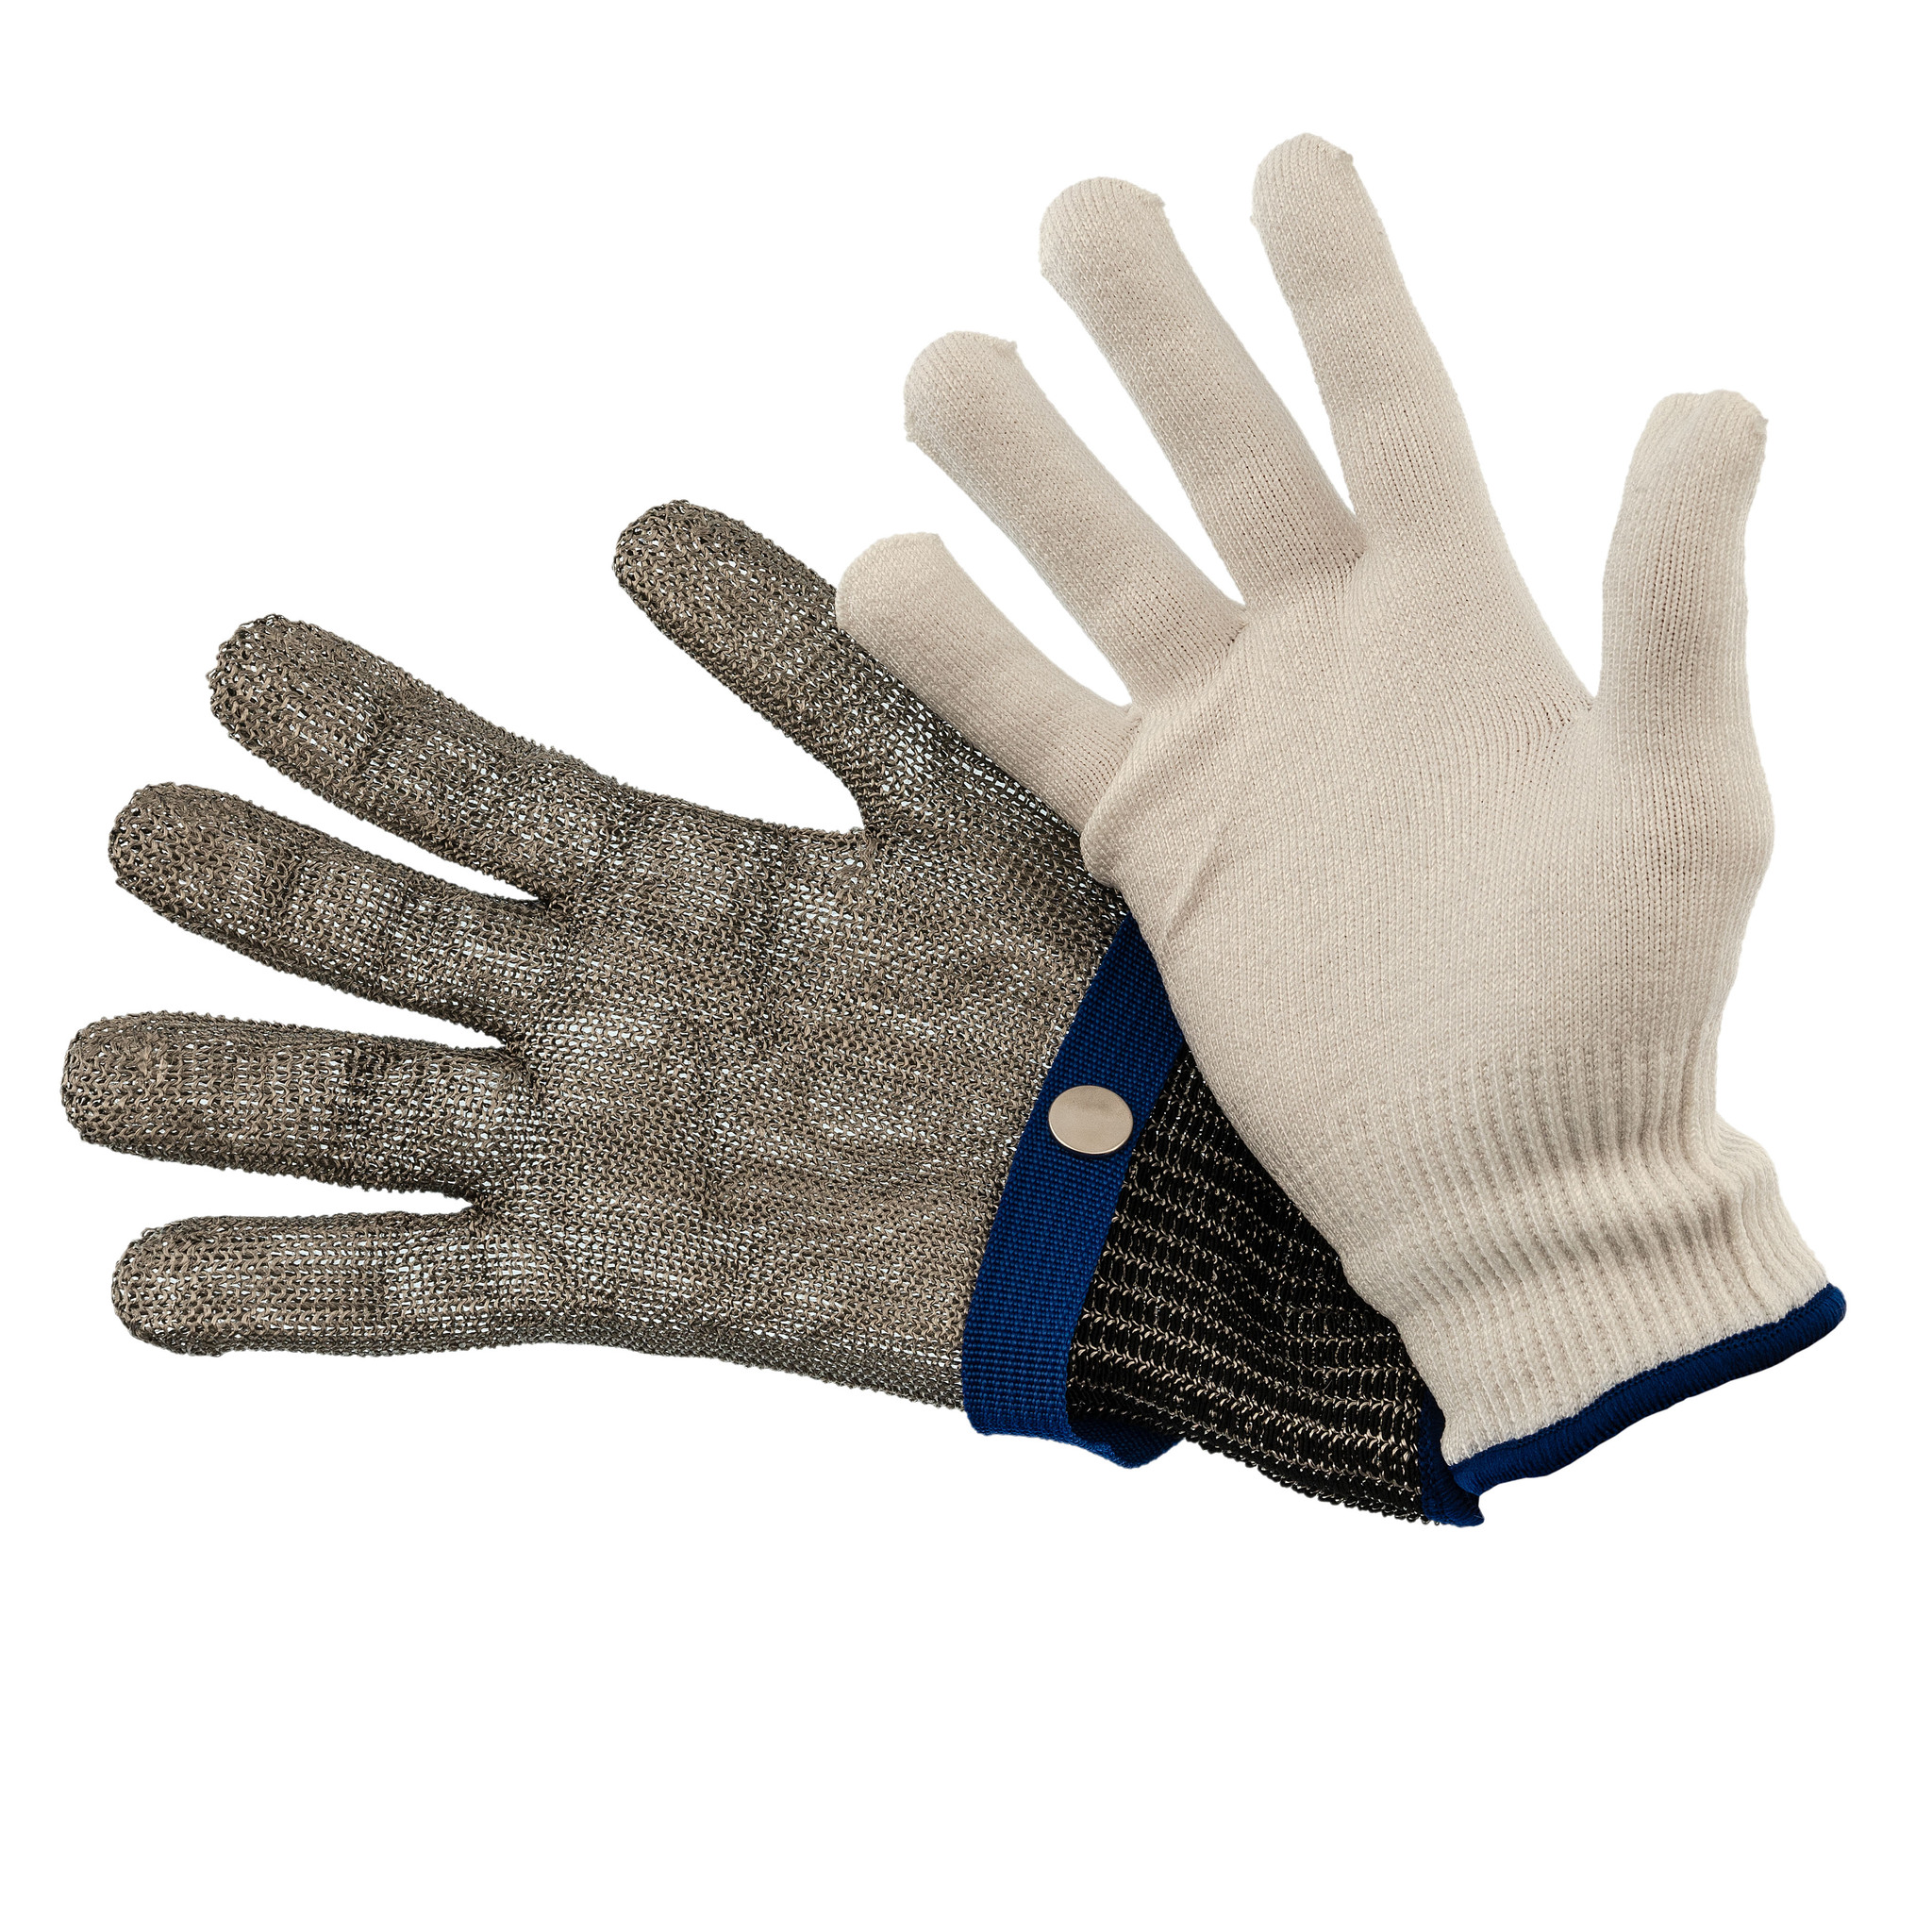 Купить рукавицы и перчатки в интернет-магазине Левша с доставкой по Уфе